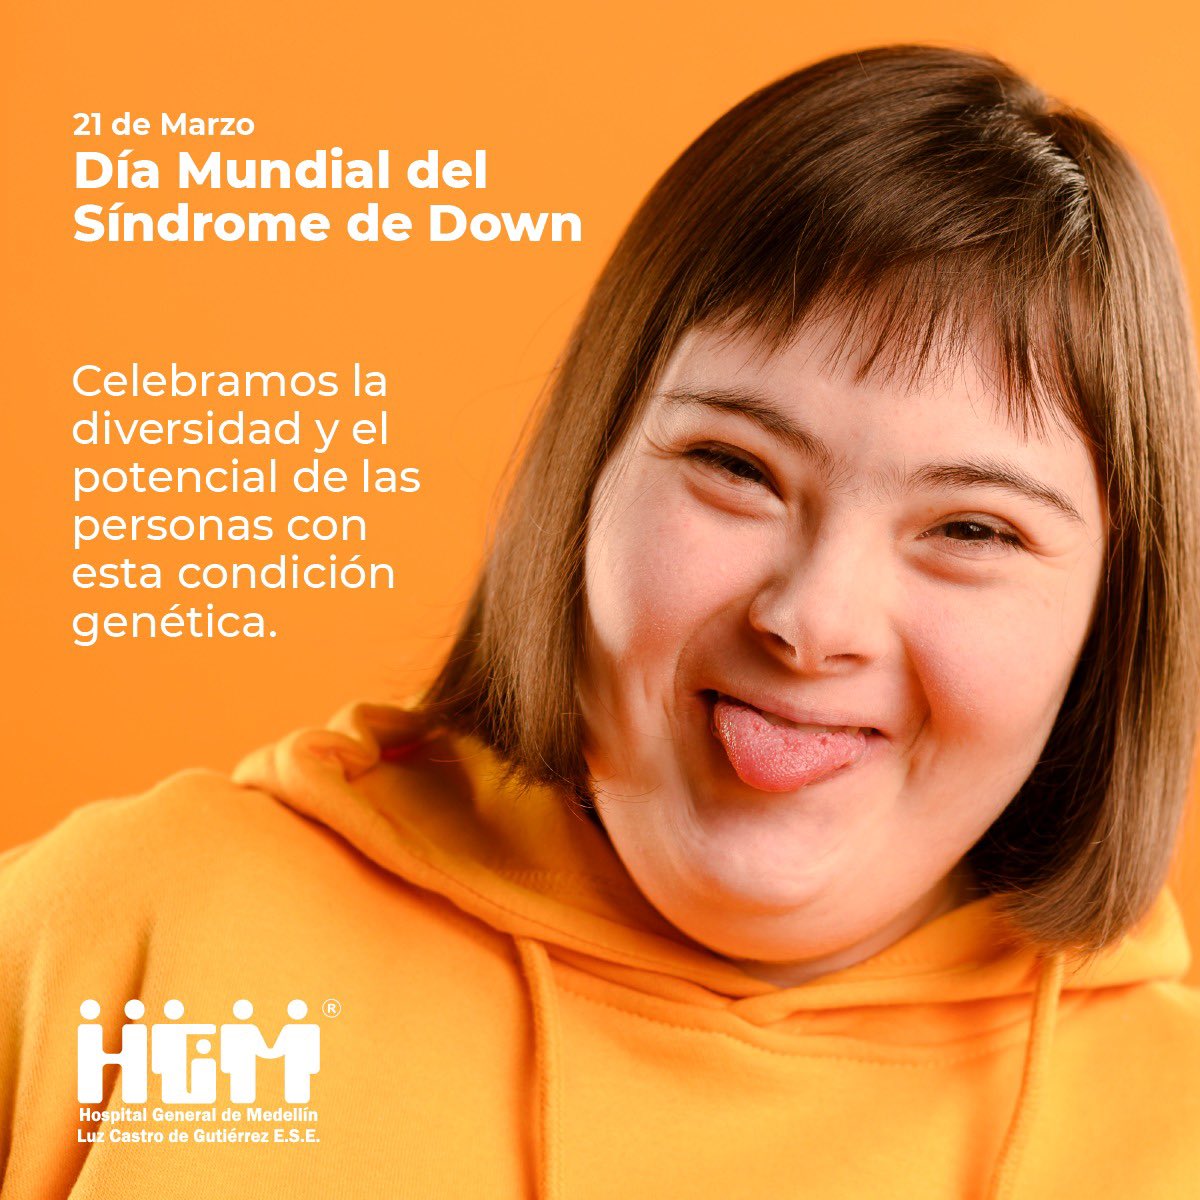 El síndrome de Down es una alteración debida a la existencia de material genético extra en el cromosoma 21. Hoy hacemos un llamado a crear una sociedad inclusiva que valore las habilidades y contribuciones de las personas con este síndrome. #HGMSomosTodos🧡